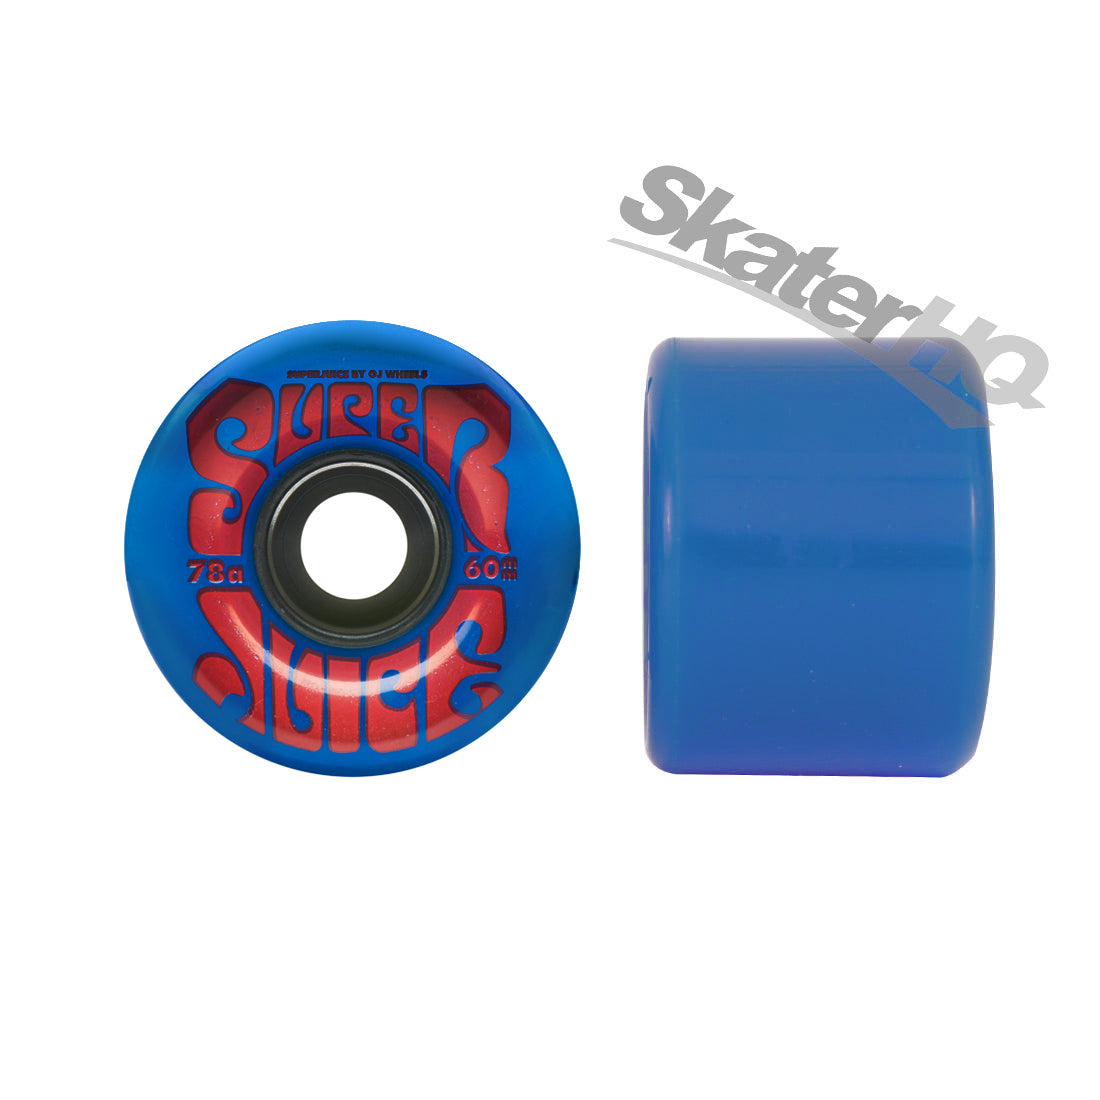 OJs Super Juice 60mm 78a 4pk - Blue Skateboard Wheels